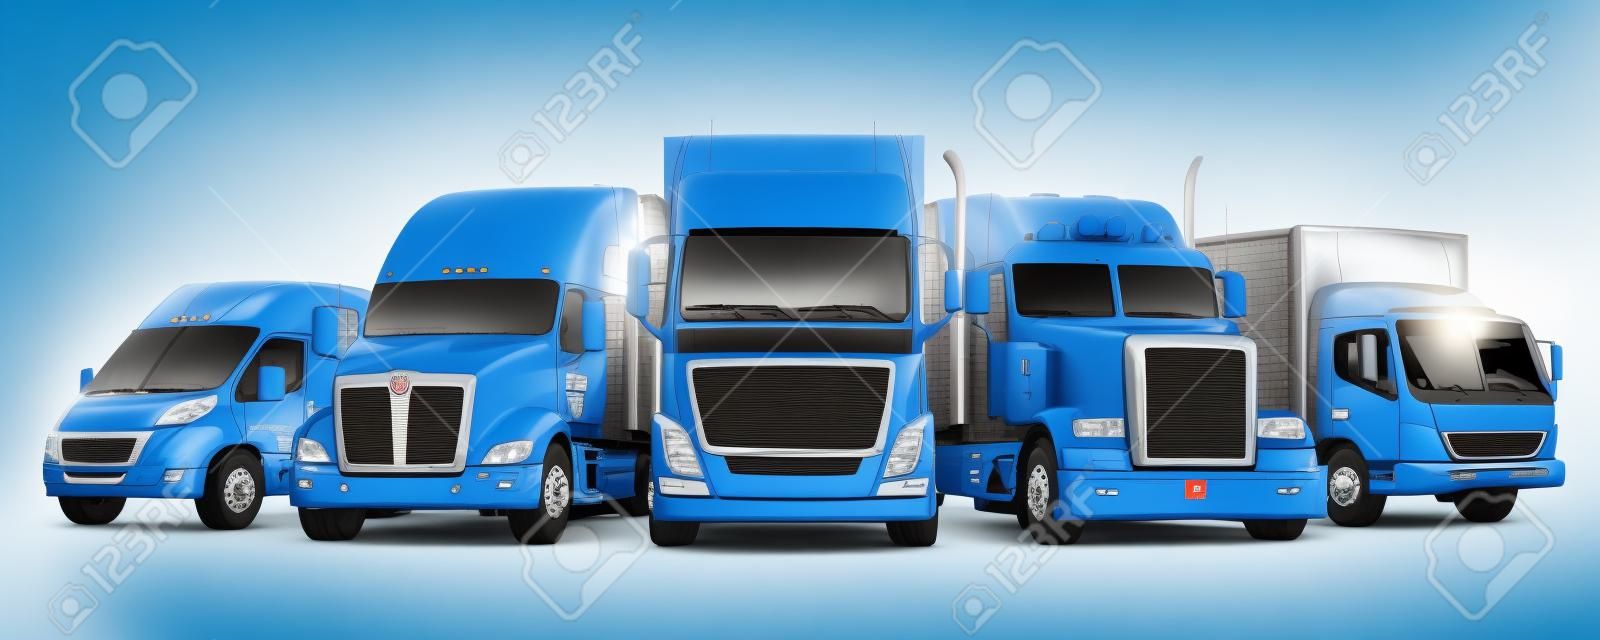 Fleet of Freight Transportation